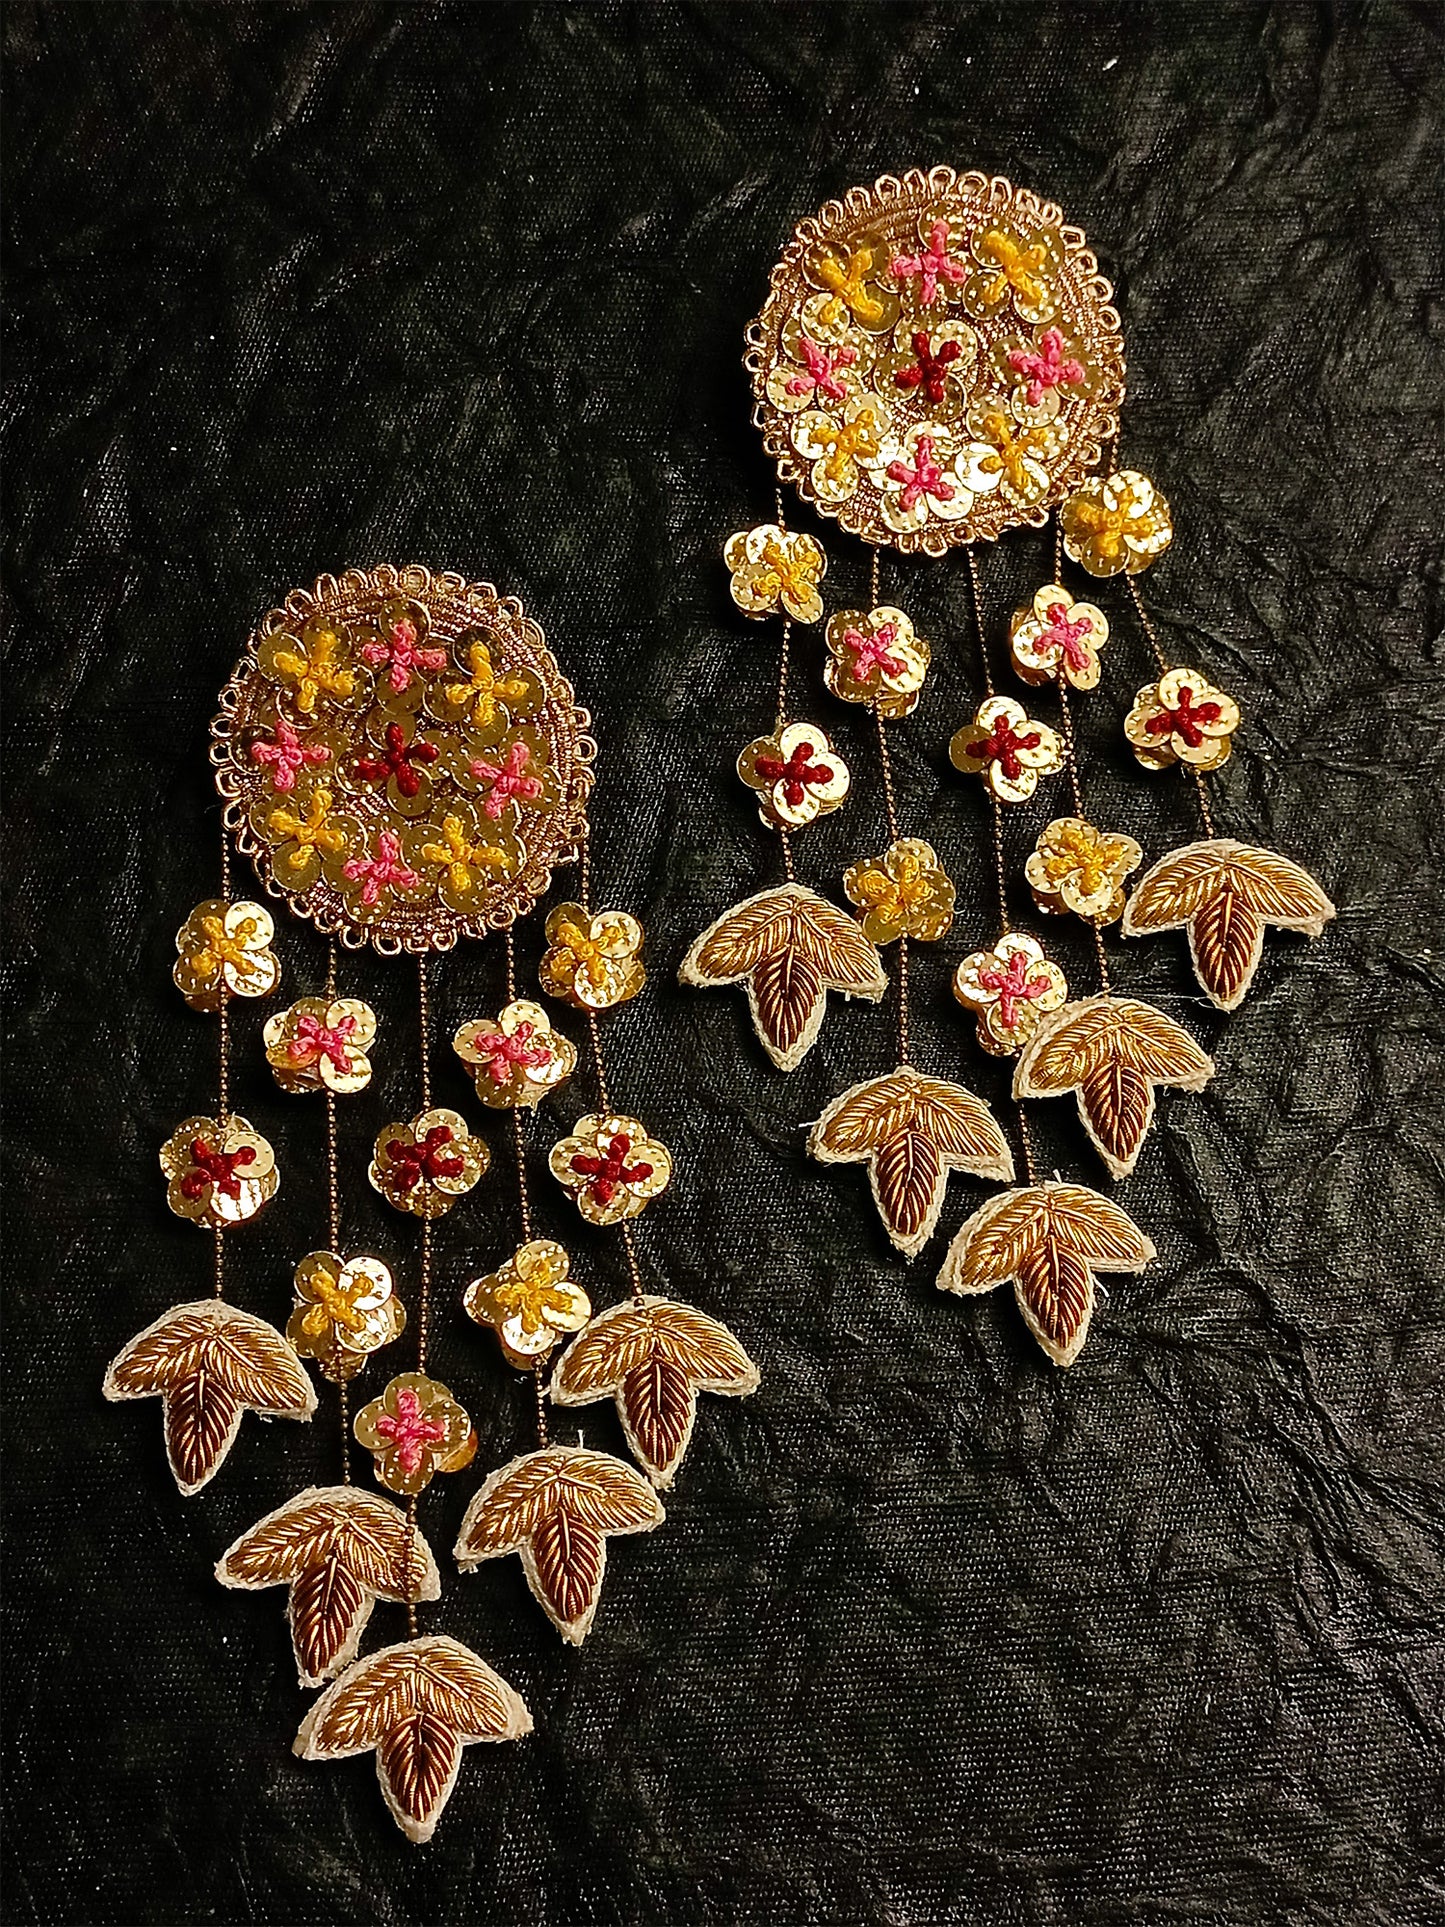 Bharni Antique Gold Handmade Earrings